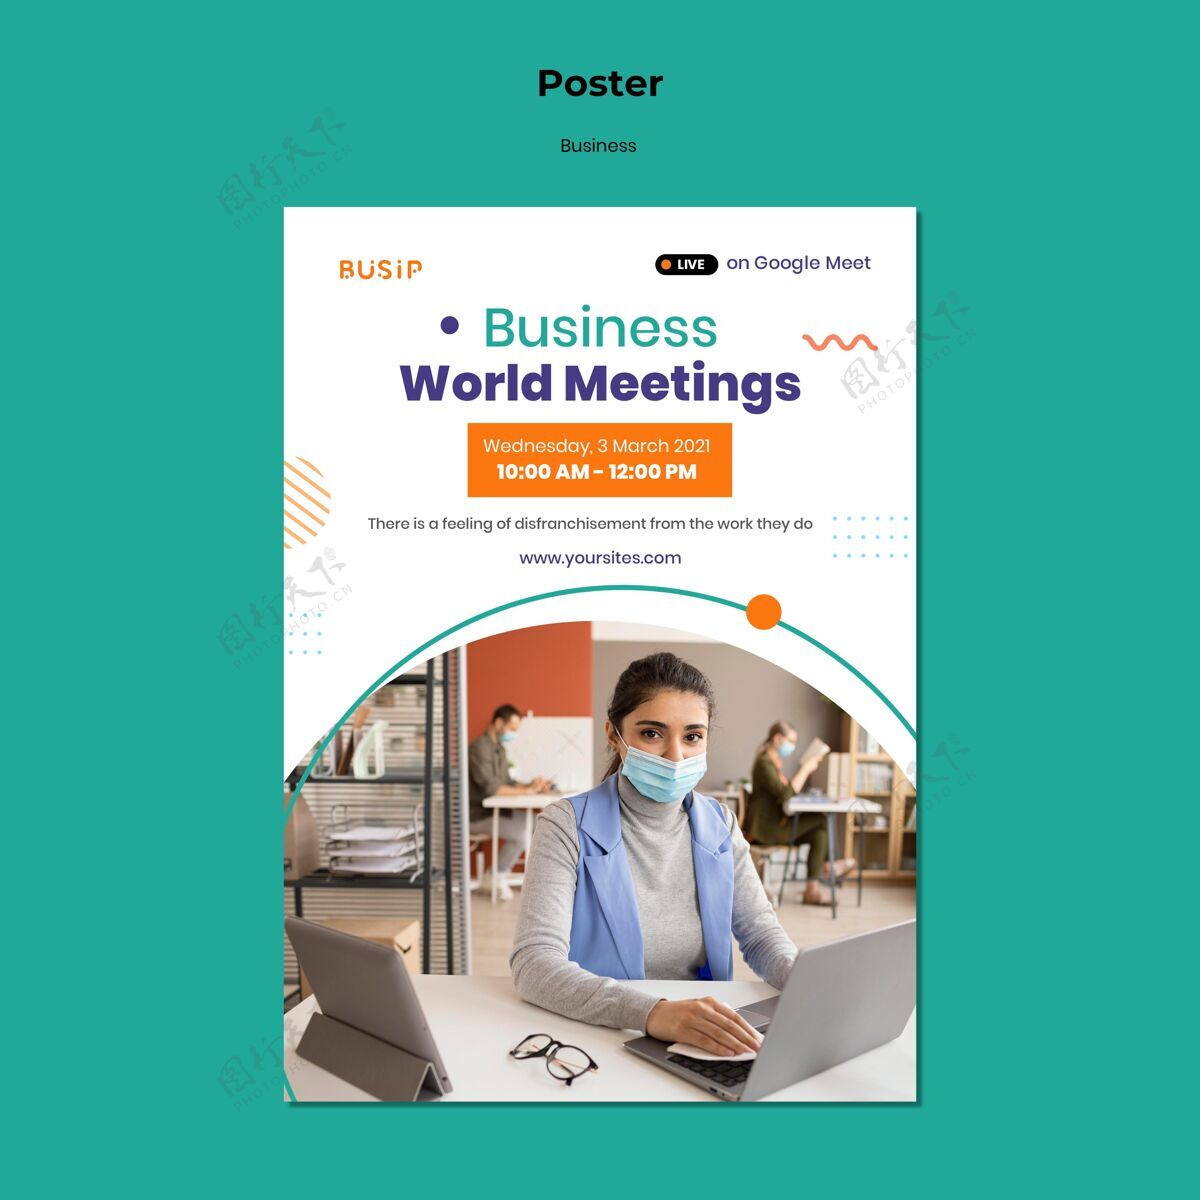 商业垂直海报模板的网络研讨会和商业启动海报网络研讨会公司